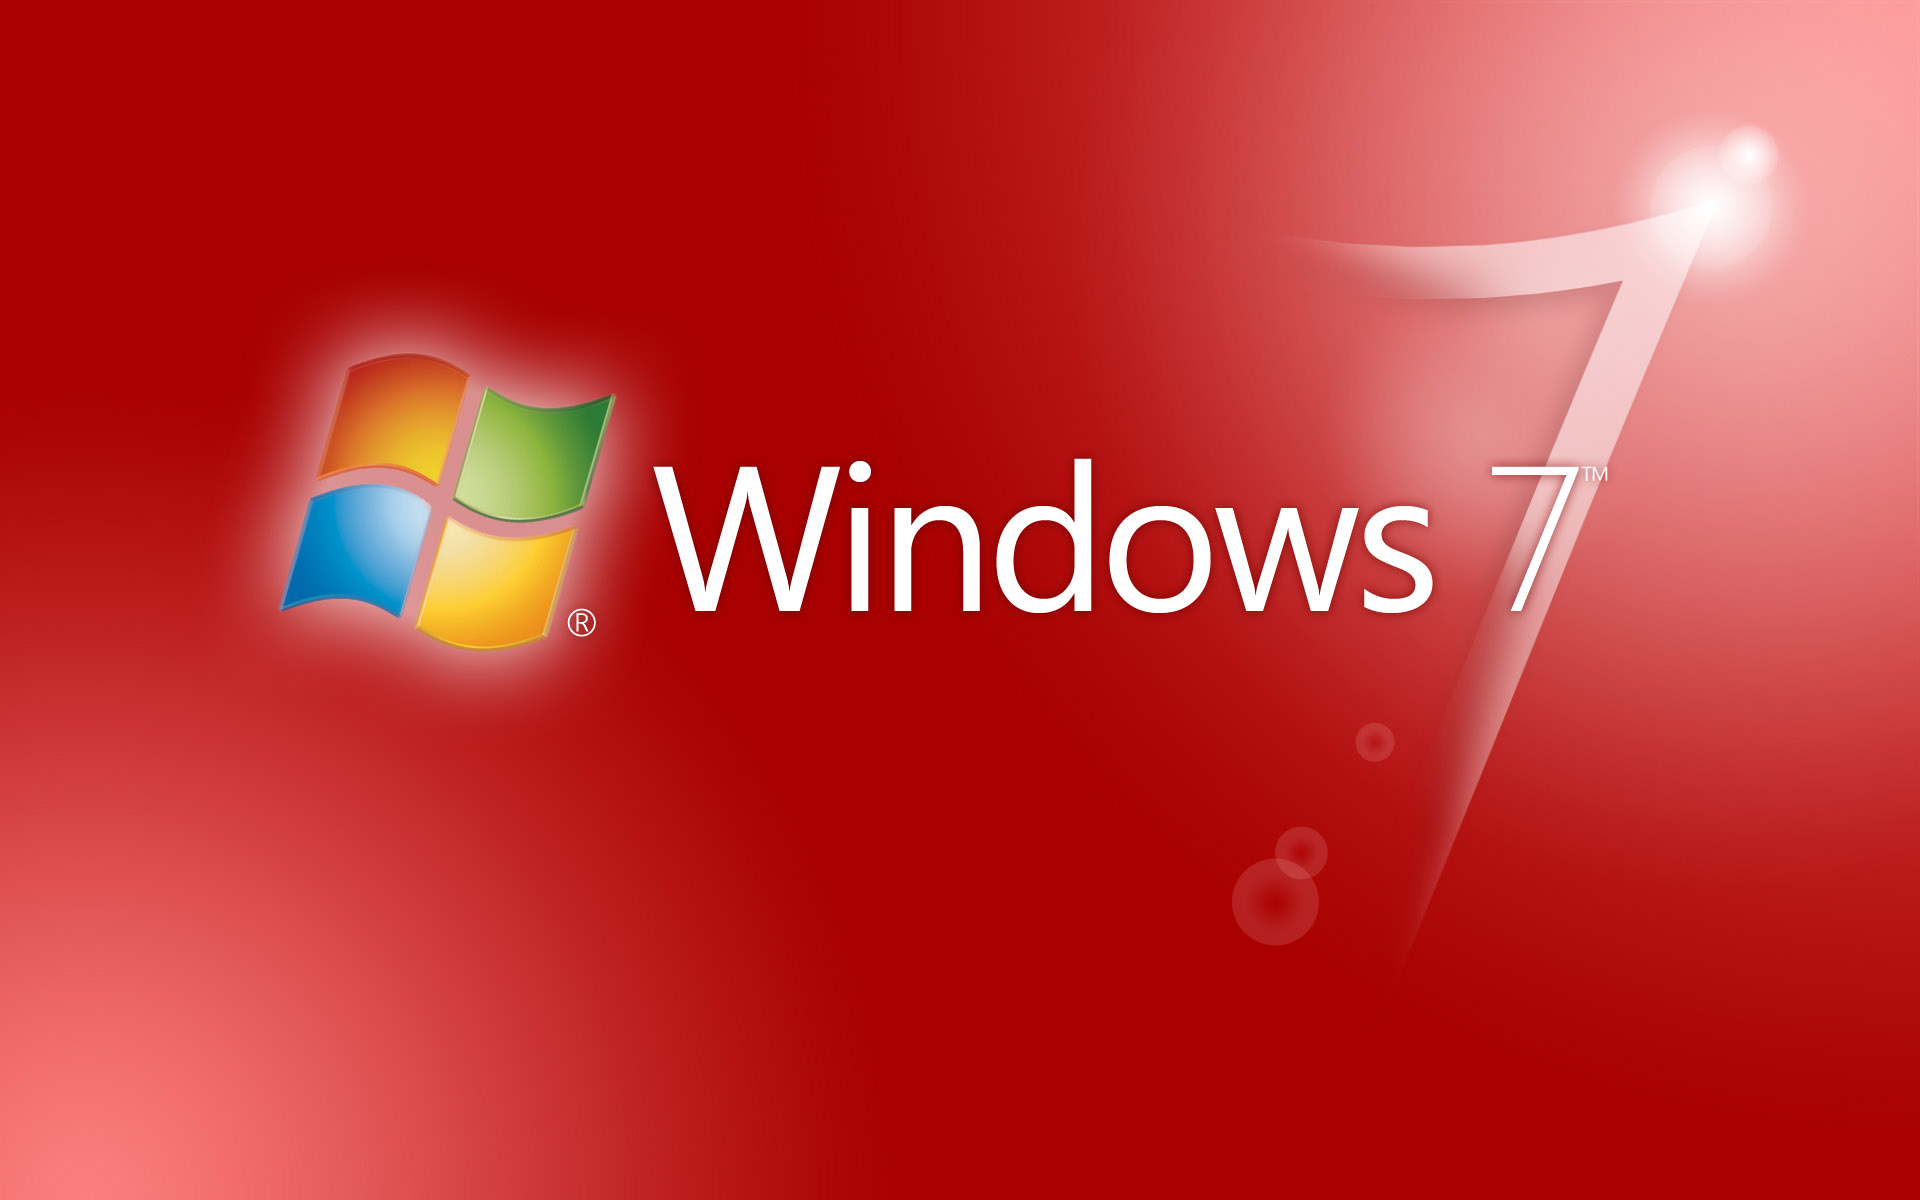 vijay fondos de pantalla hd para windows 7,texto,rojo,fuente,diseño gráfico,sistema operativo